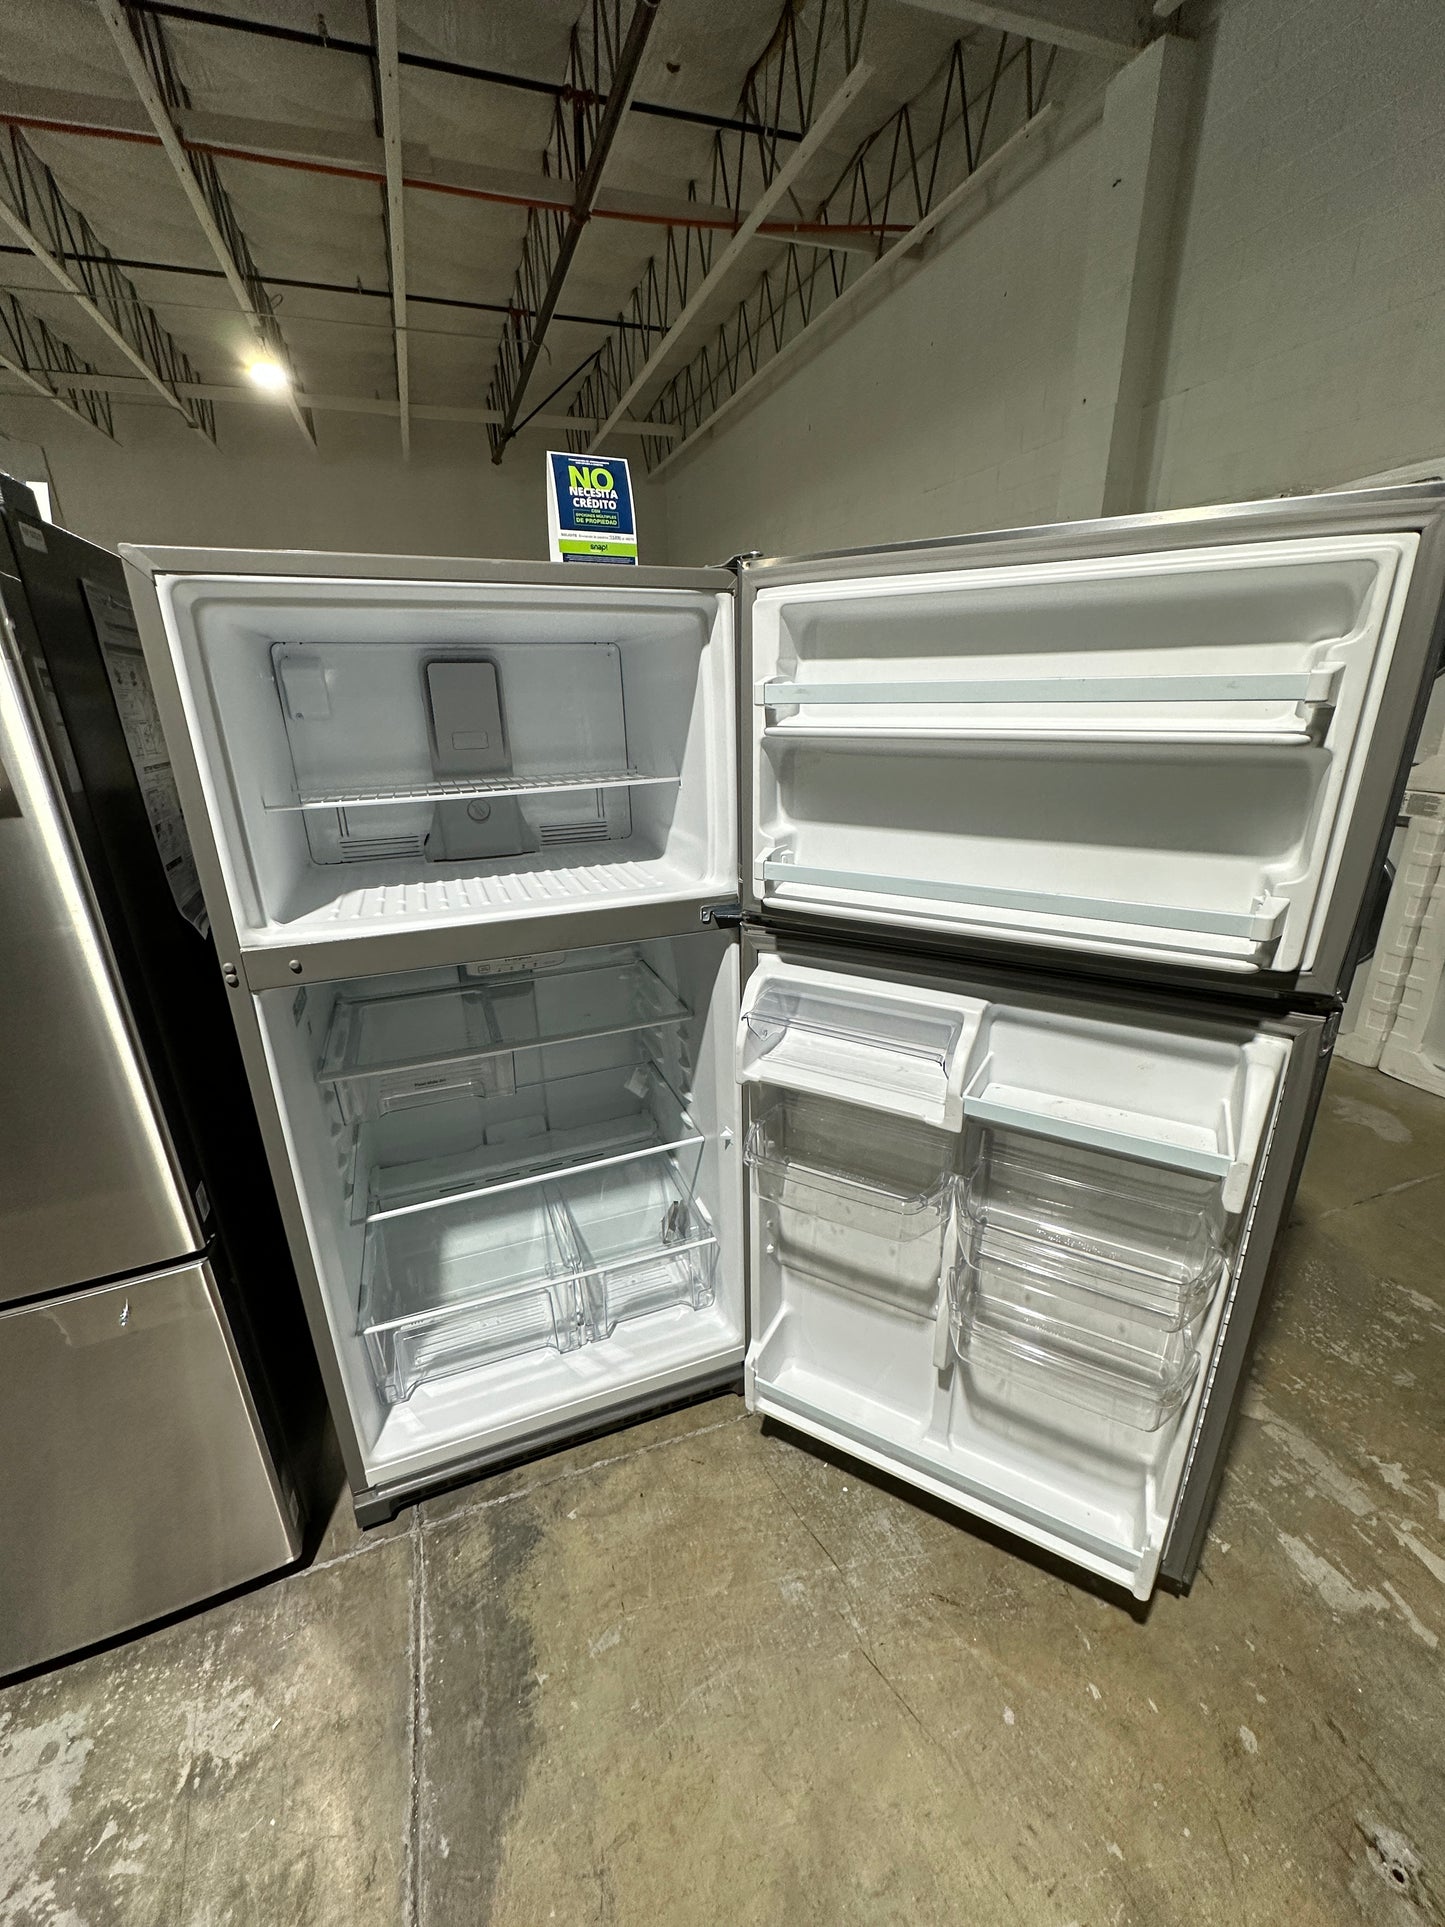 Whirlpool - 20.5 Cu. Ft. Top-Freezer Refrigerator - Stainless Steel  MODEL:wr311fzdz02  REF12269S